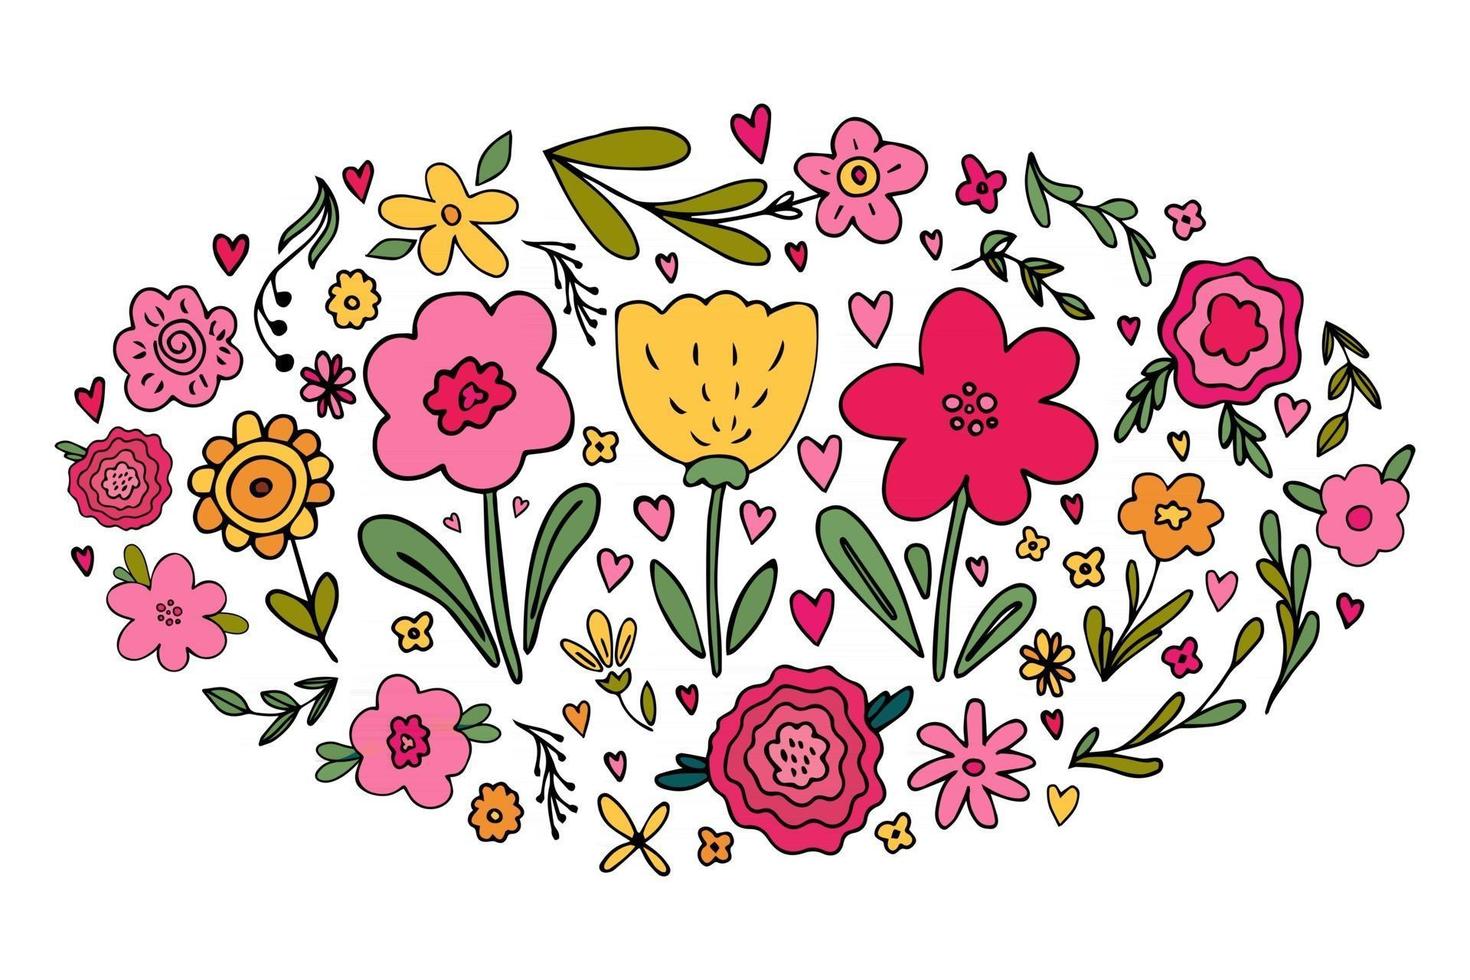 großer Satz von verschiedenen handgezeichneten einfachen floralen Kritzeleien - Blume, Kräuter vektor